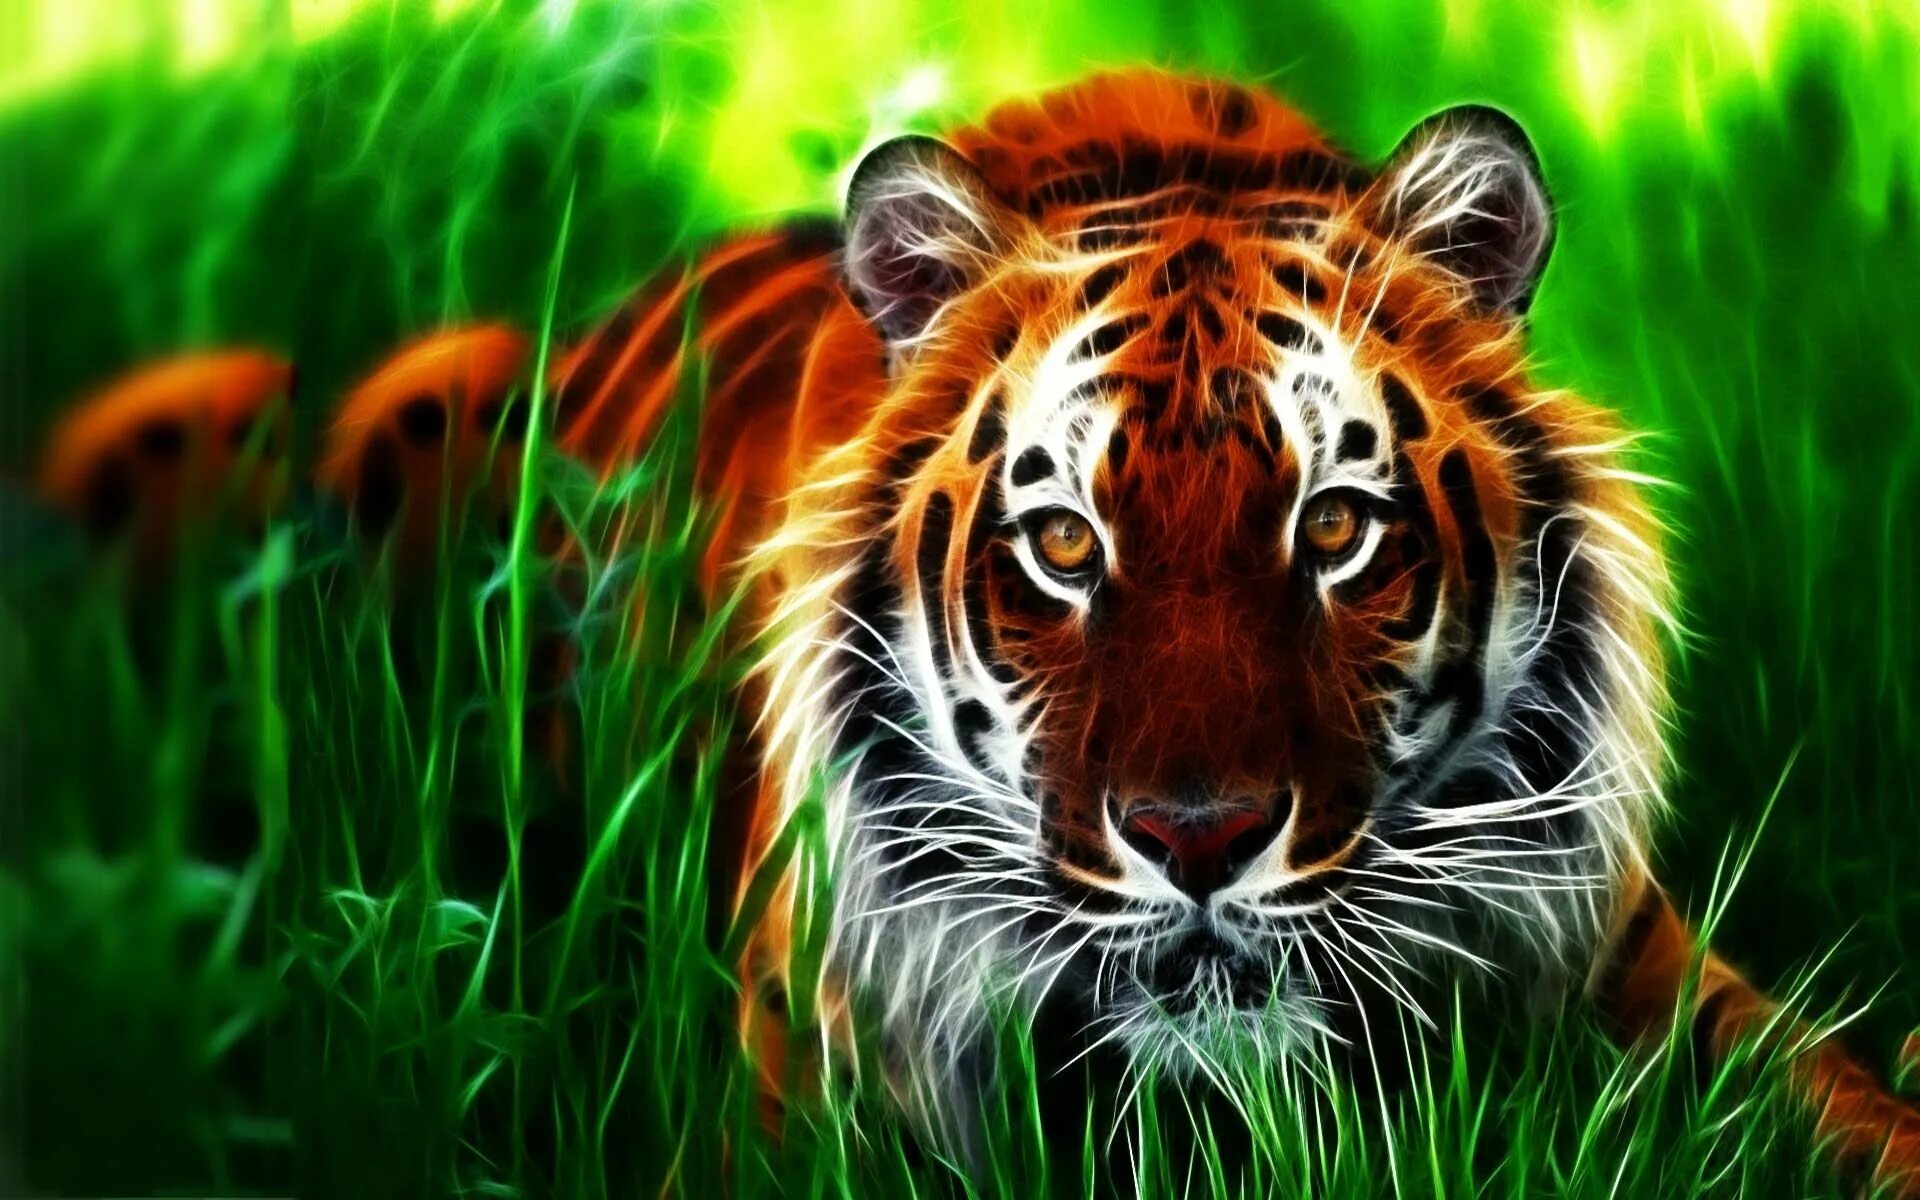 Заставки на телефон тиграми бесплатные. Тигр 3. Тигр картинки. Картинки на рабочий стол животные. Заставка на рабочий стол тигр.